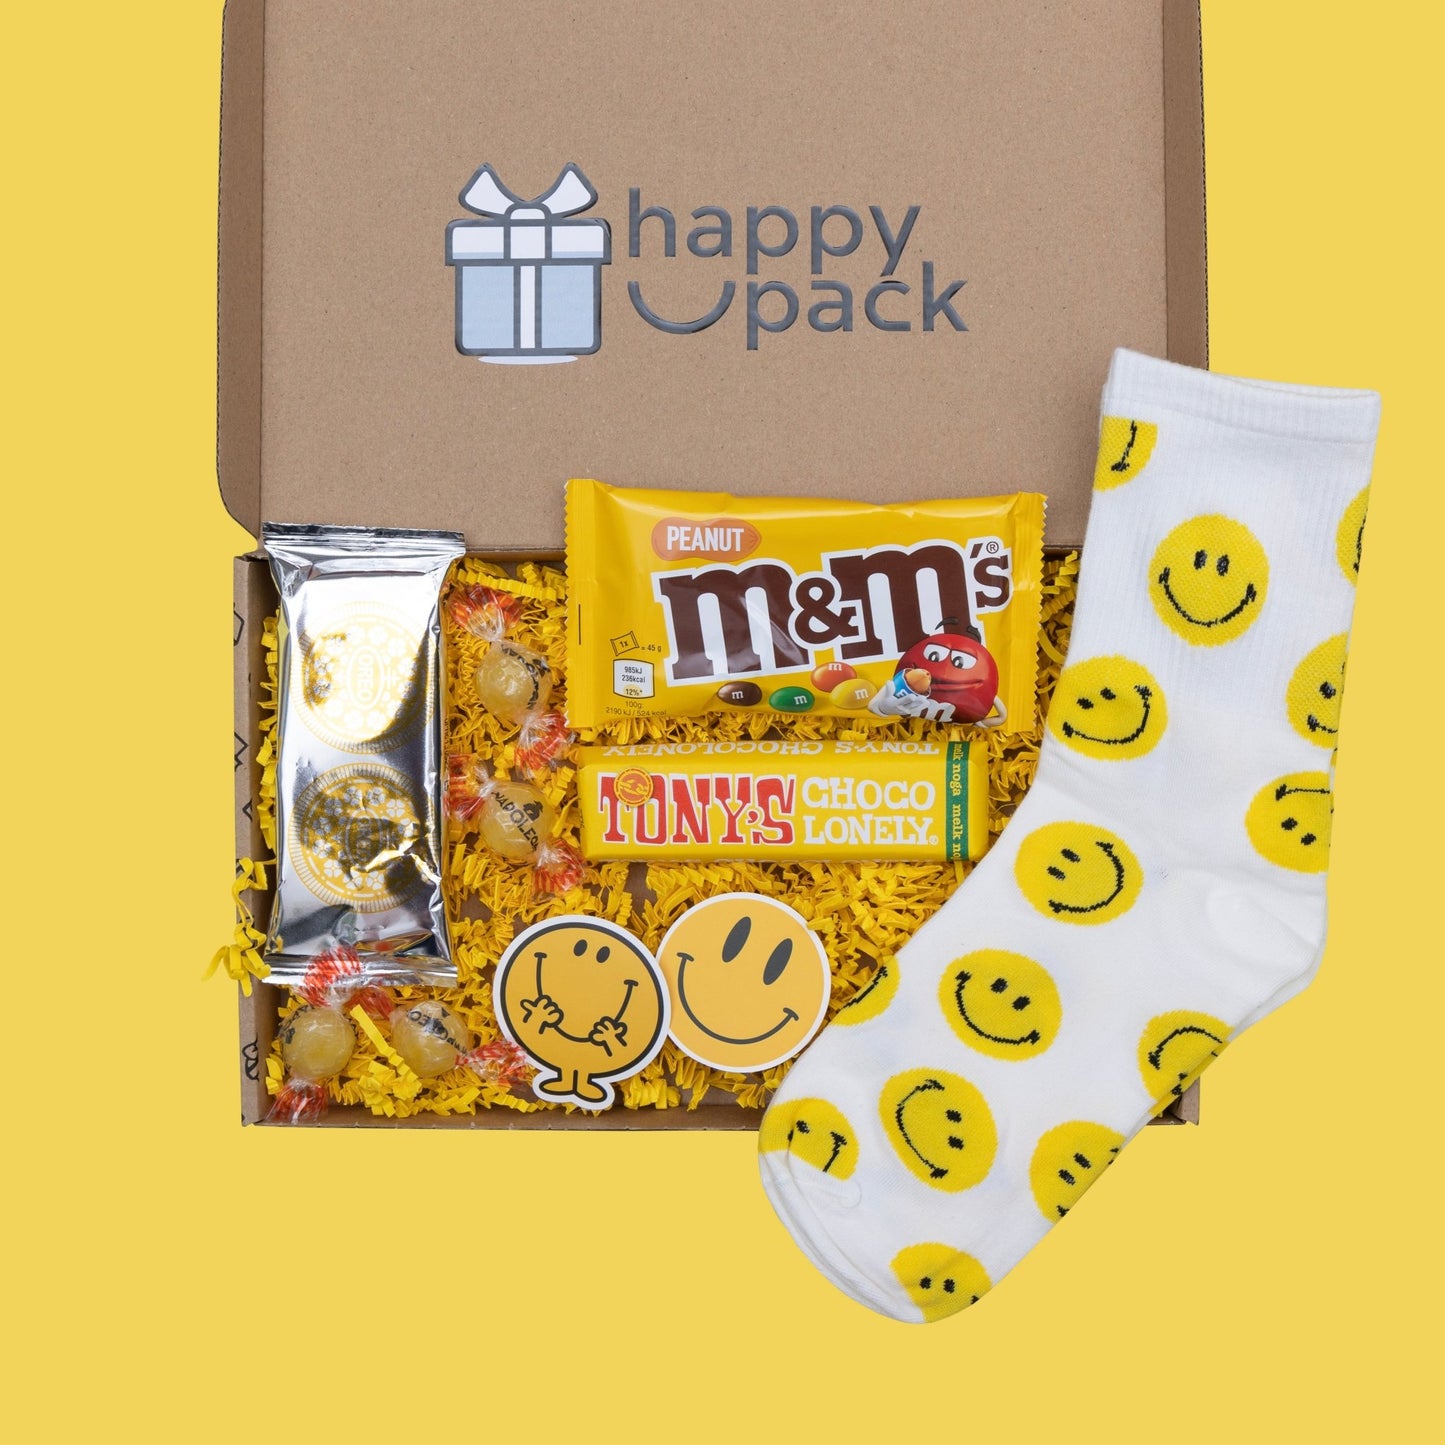 Happybox - Happypack.nl